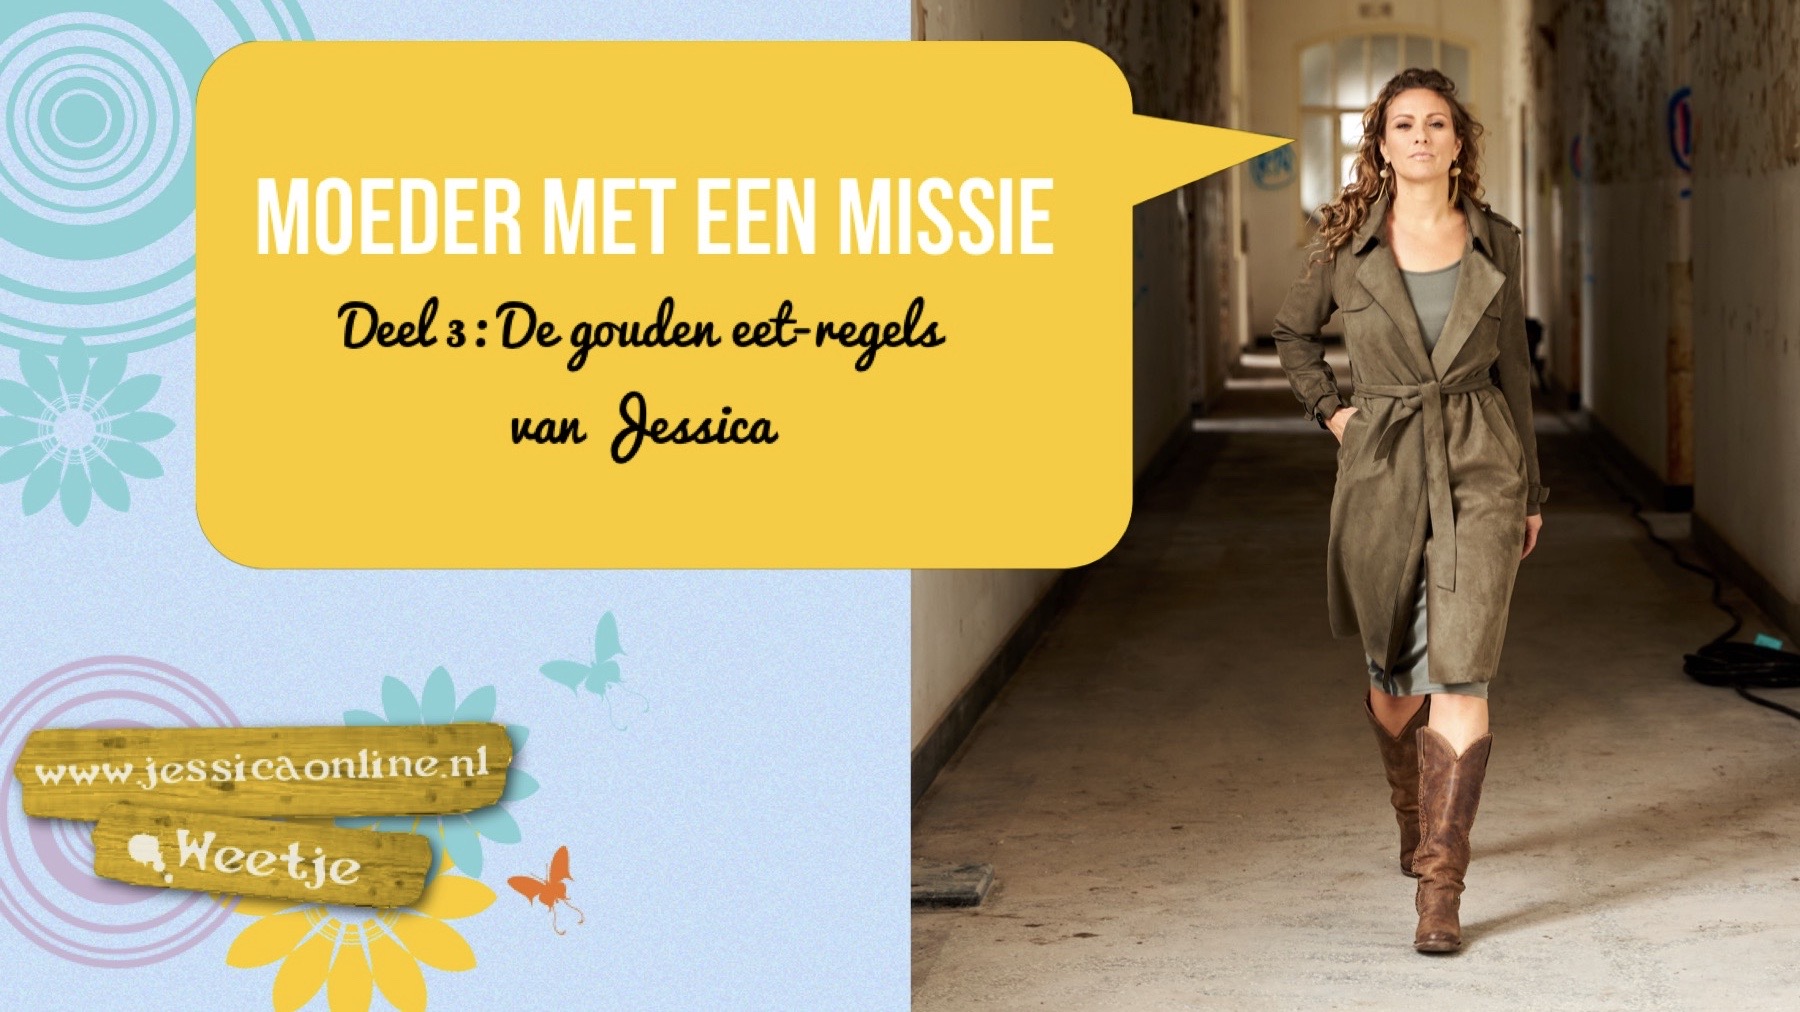 De Gouden eetregels van Jessica - JessicaOnline.nl